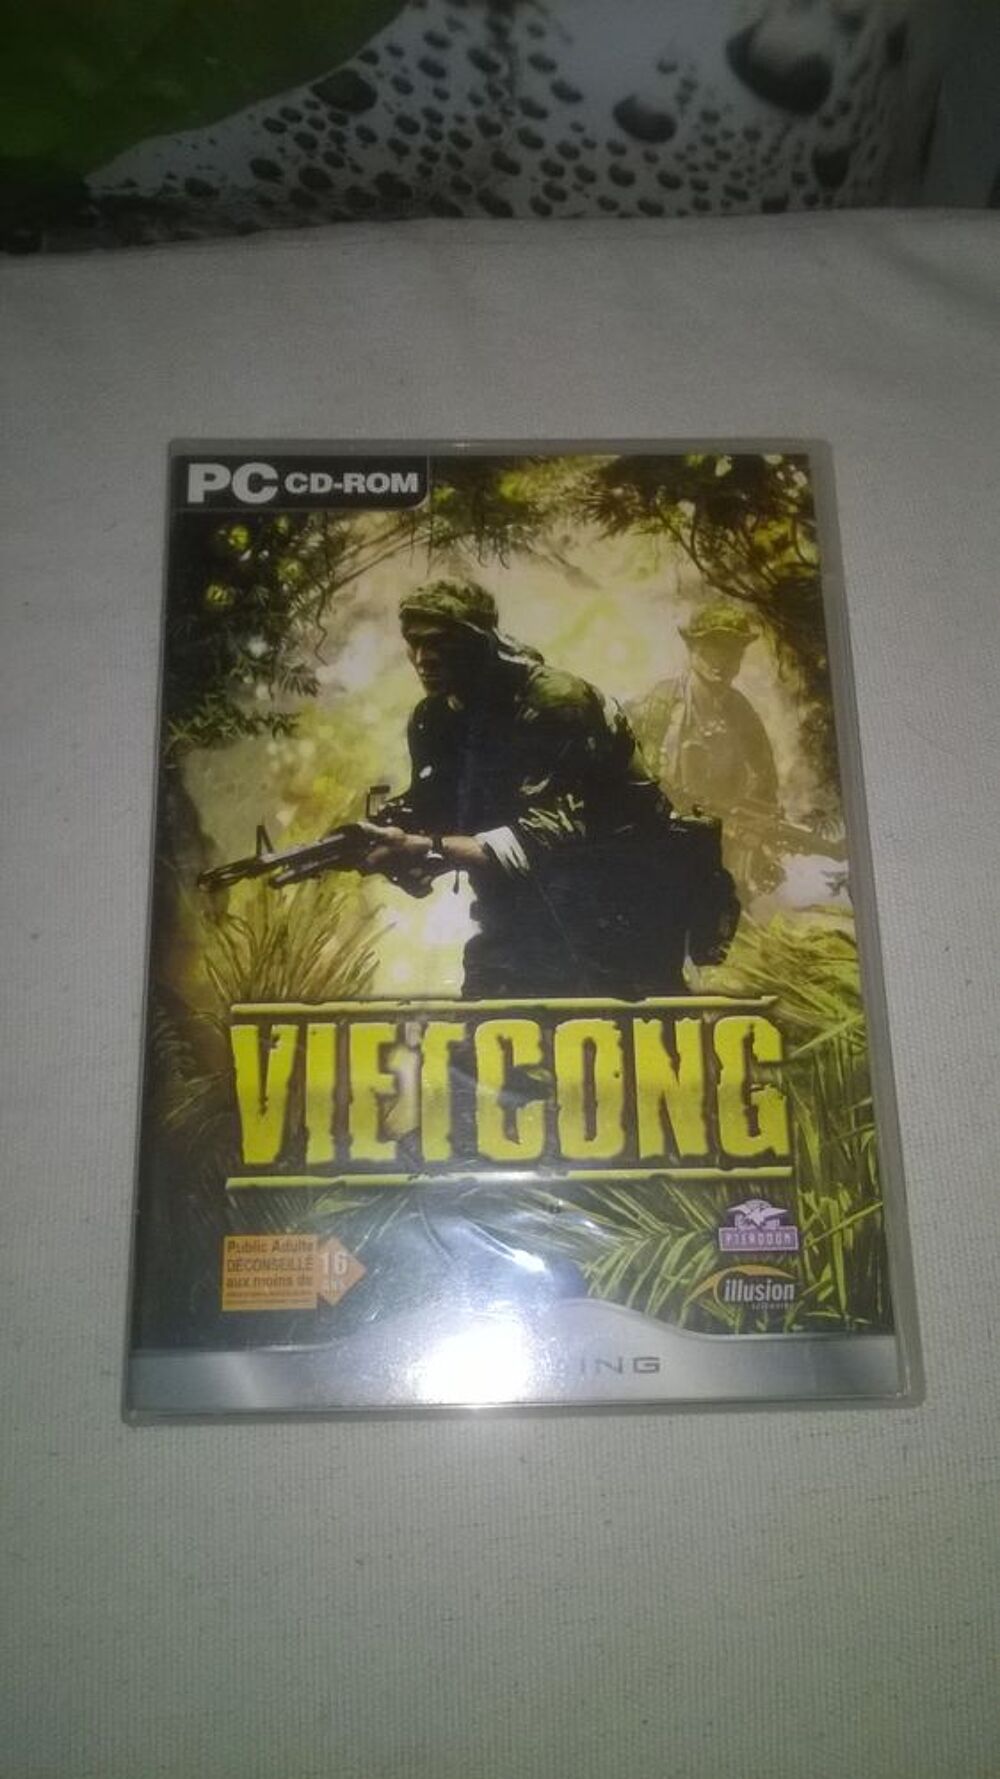 Jeux PC Vietcong 
2003
Excellent etat
Double cd
Vietcong Consoles et jeux vidos